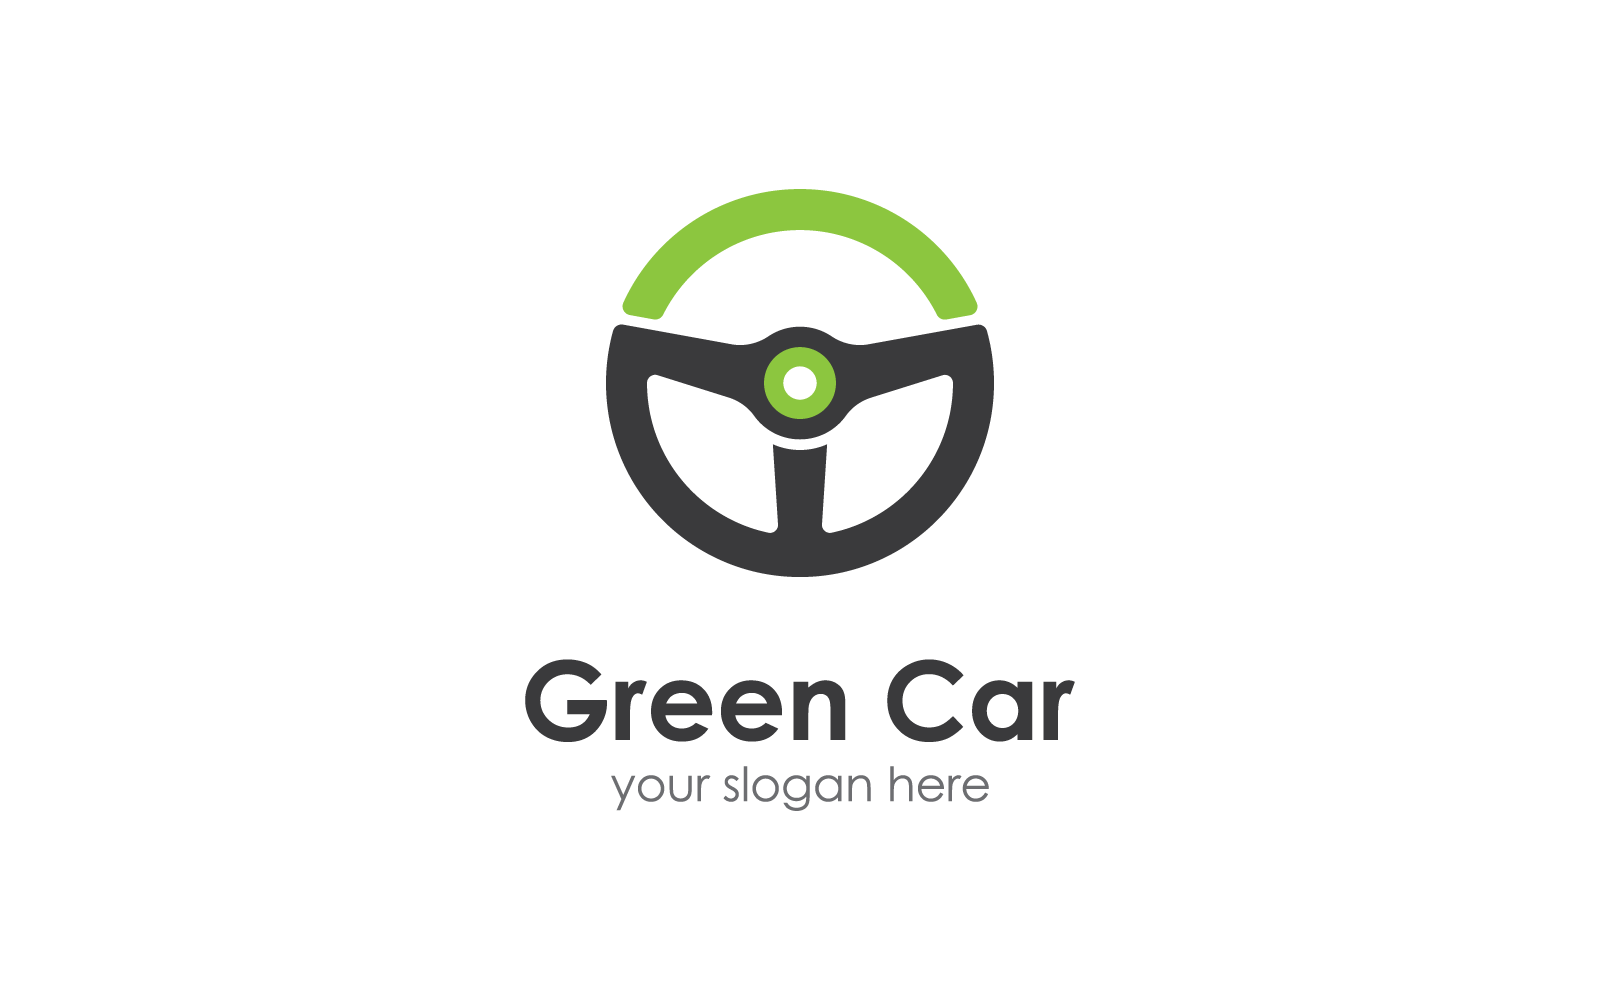 Steering wheel green car logo vector design Logo Template